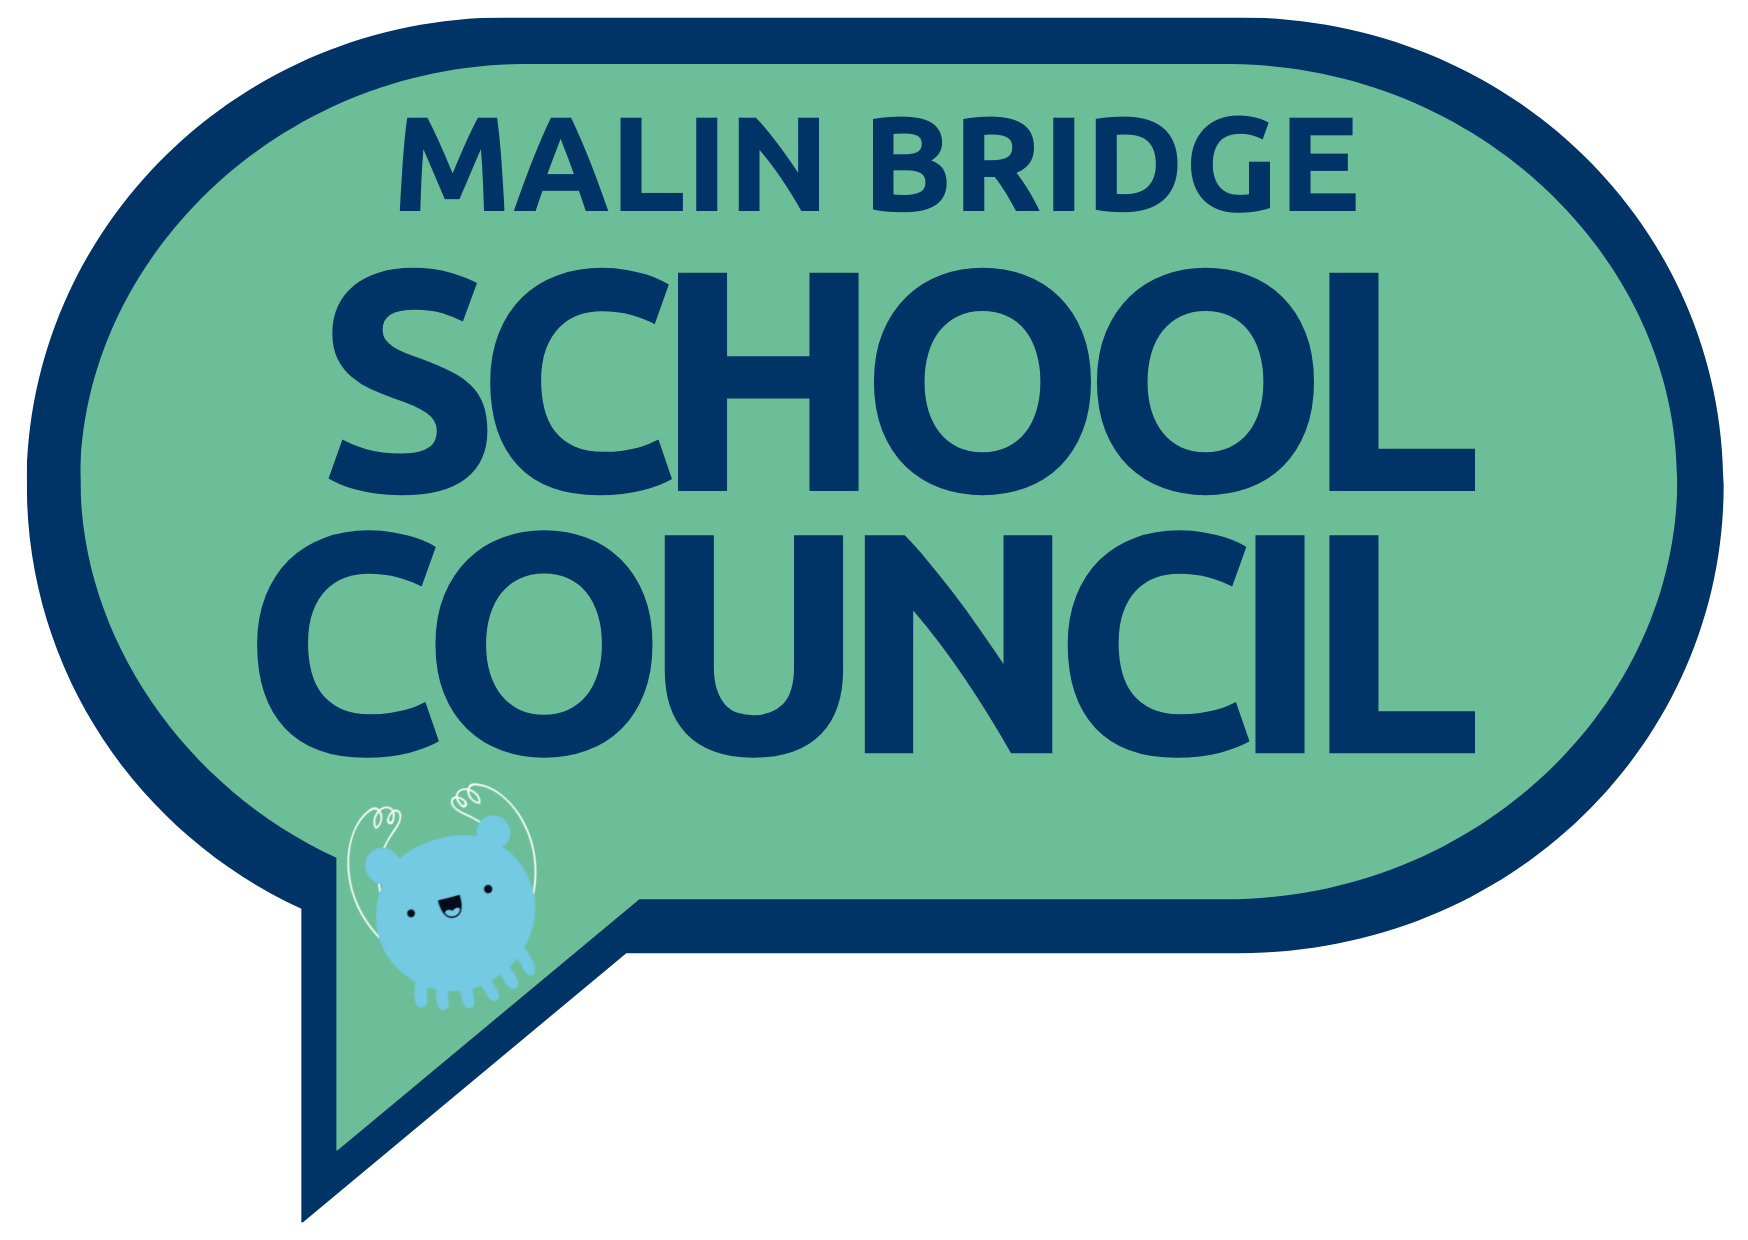 School Council logo